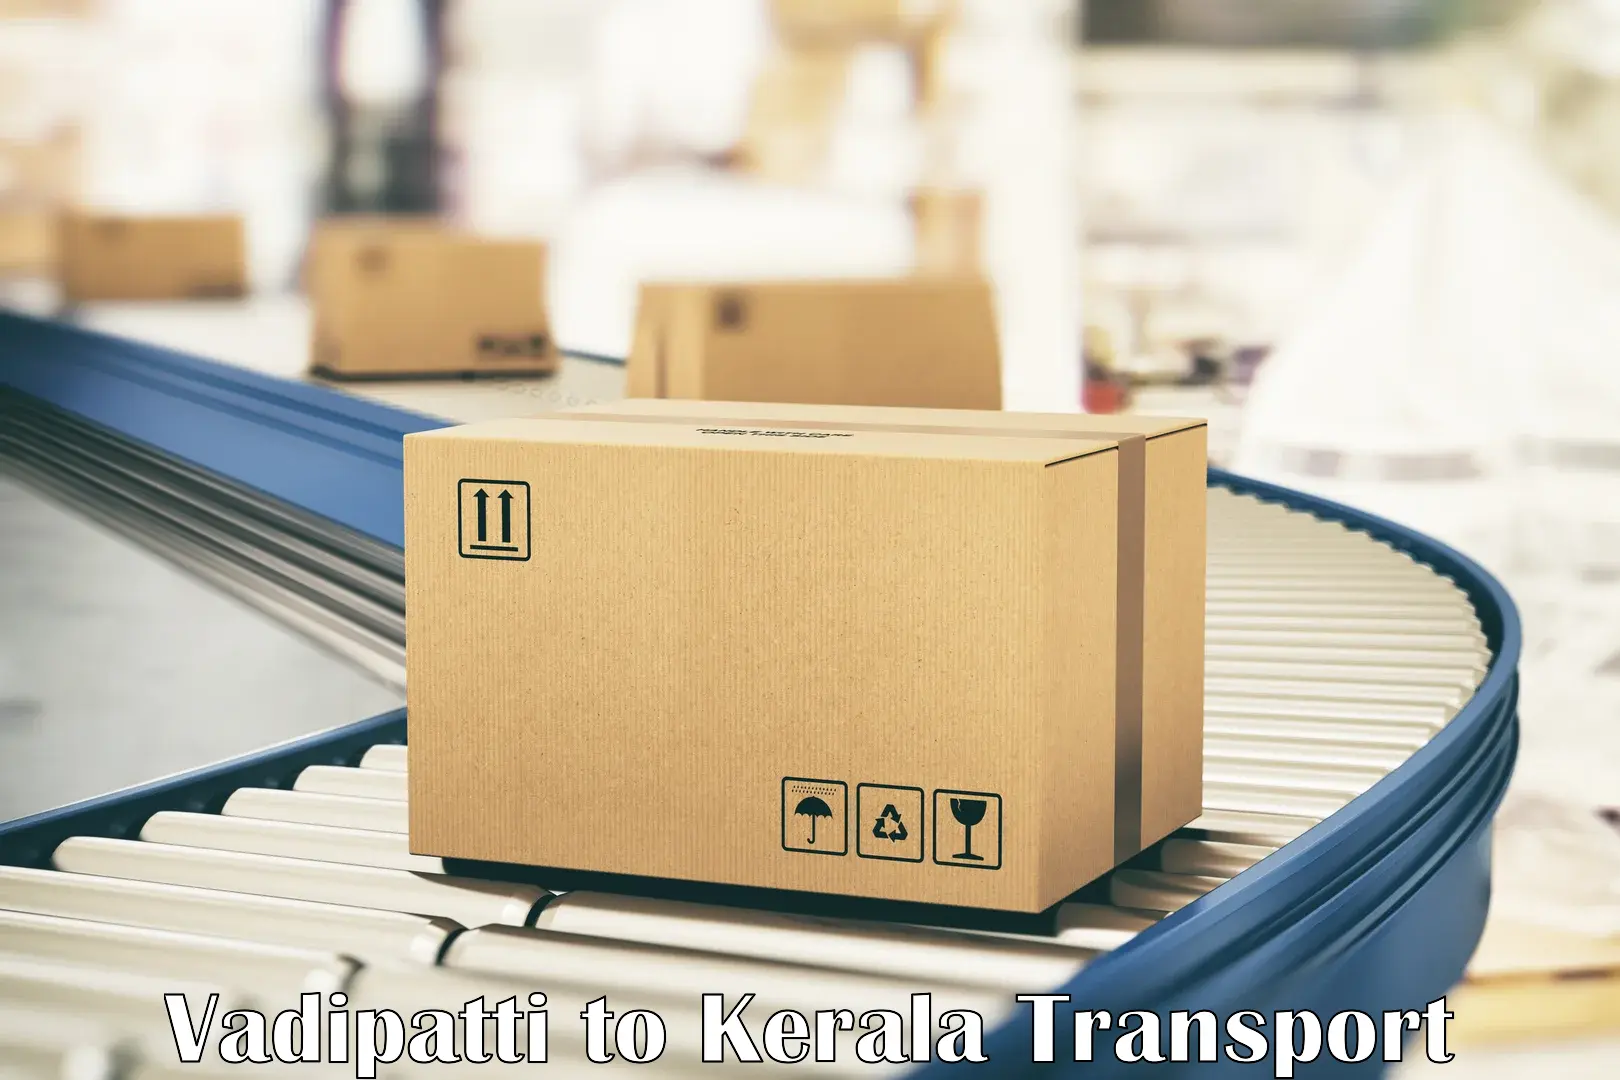 Cargo transport services Vadipatti to Kayamkulam